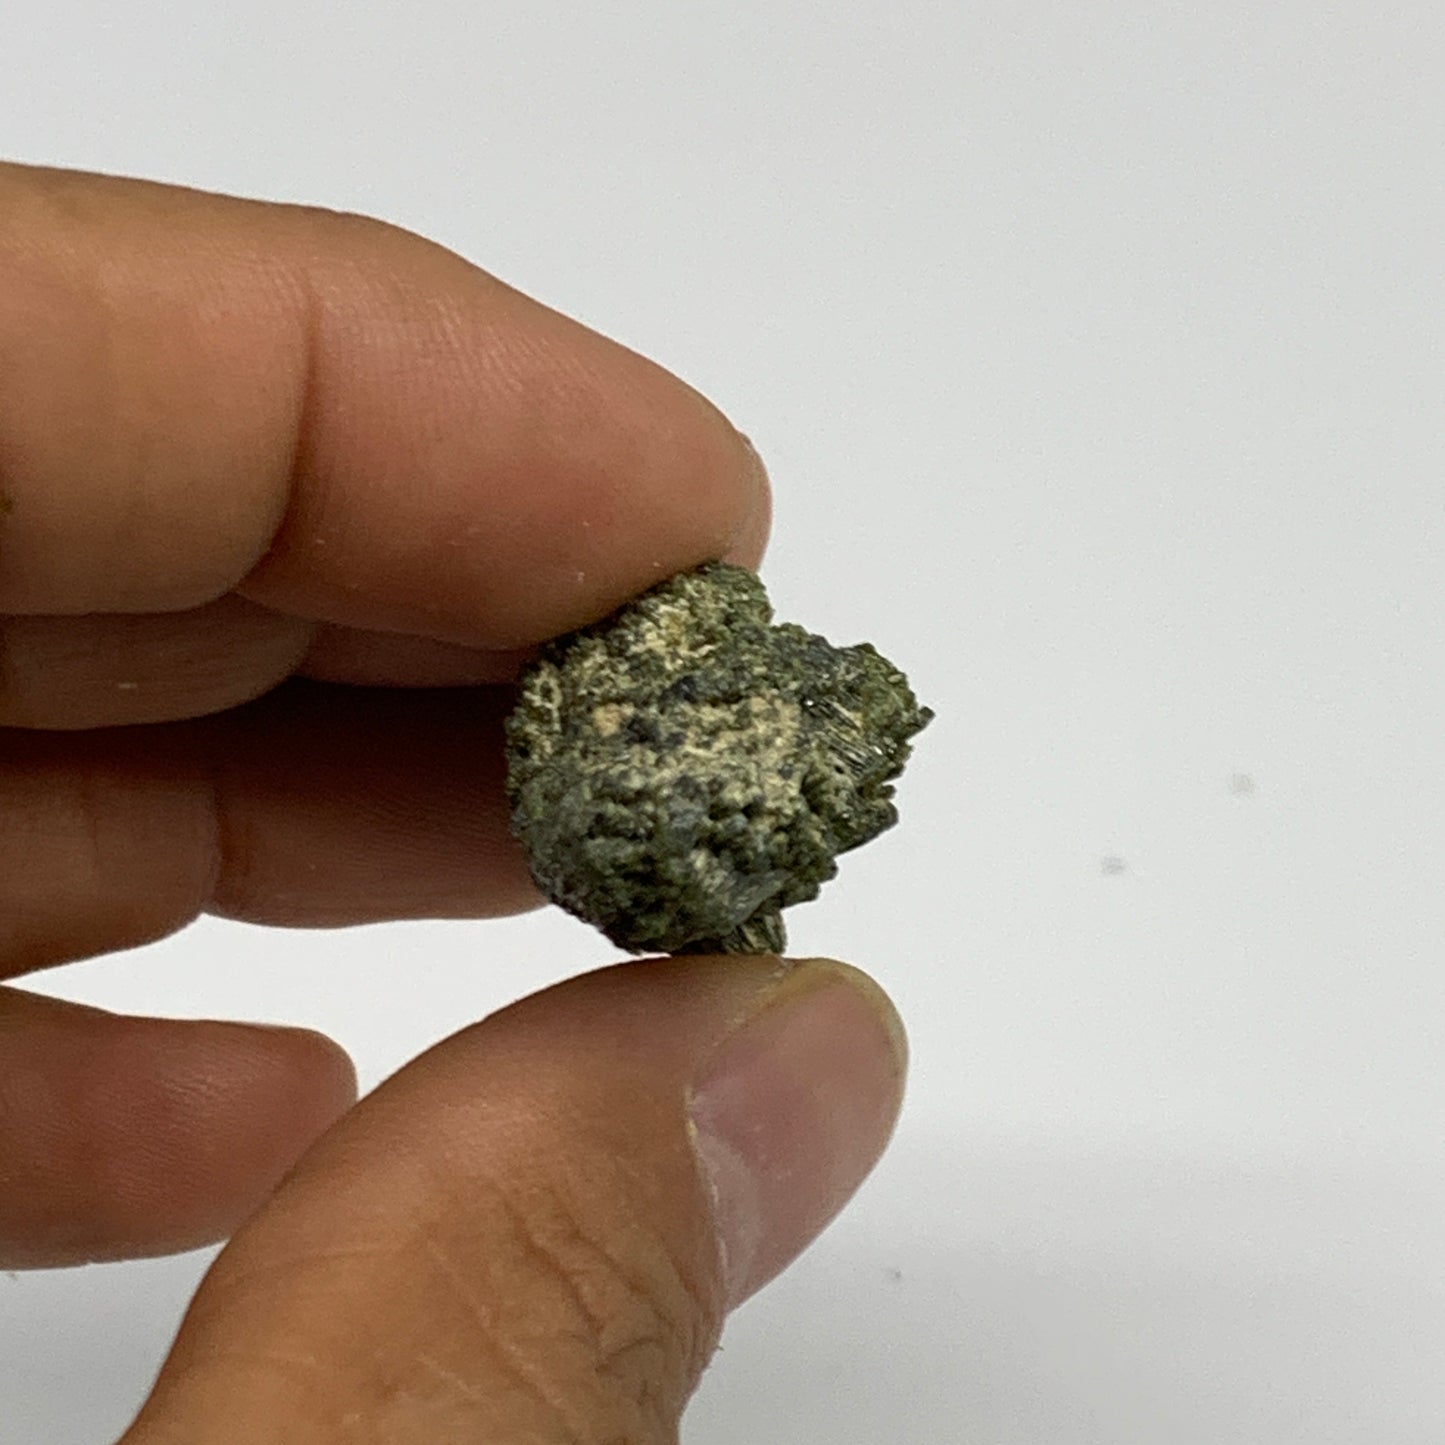 14.9g,1.9"x0.7"x0.7",Green Epidote Custer/Leaf Mineral Specimen @Pakistan,B27587